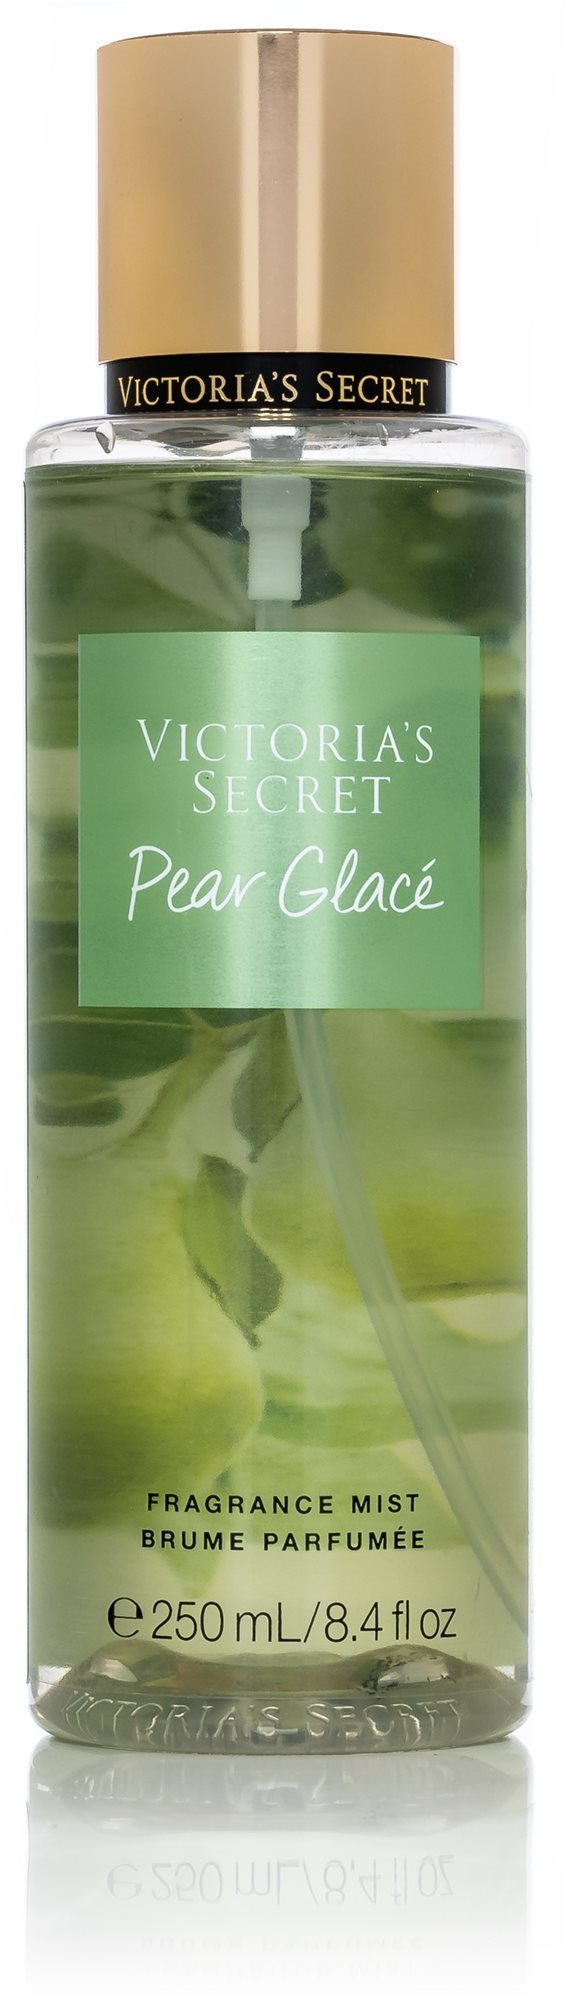 VICTORIA'S SECRET Pear Glace 250 ml